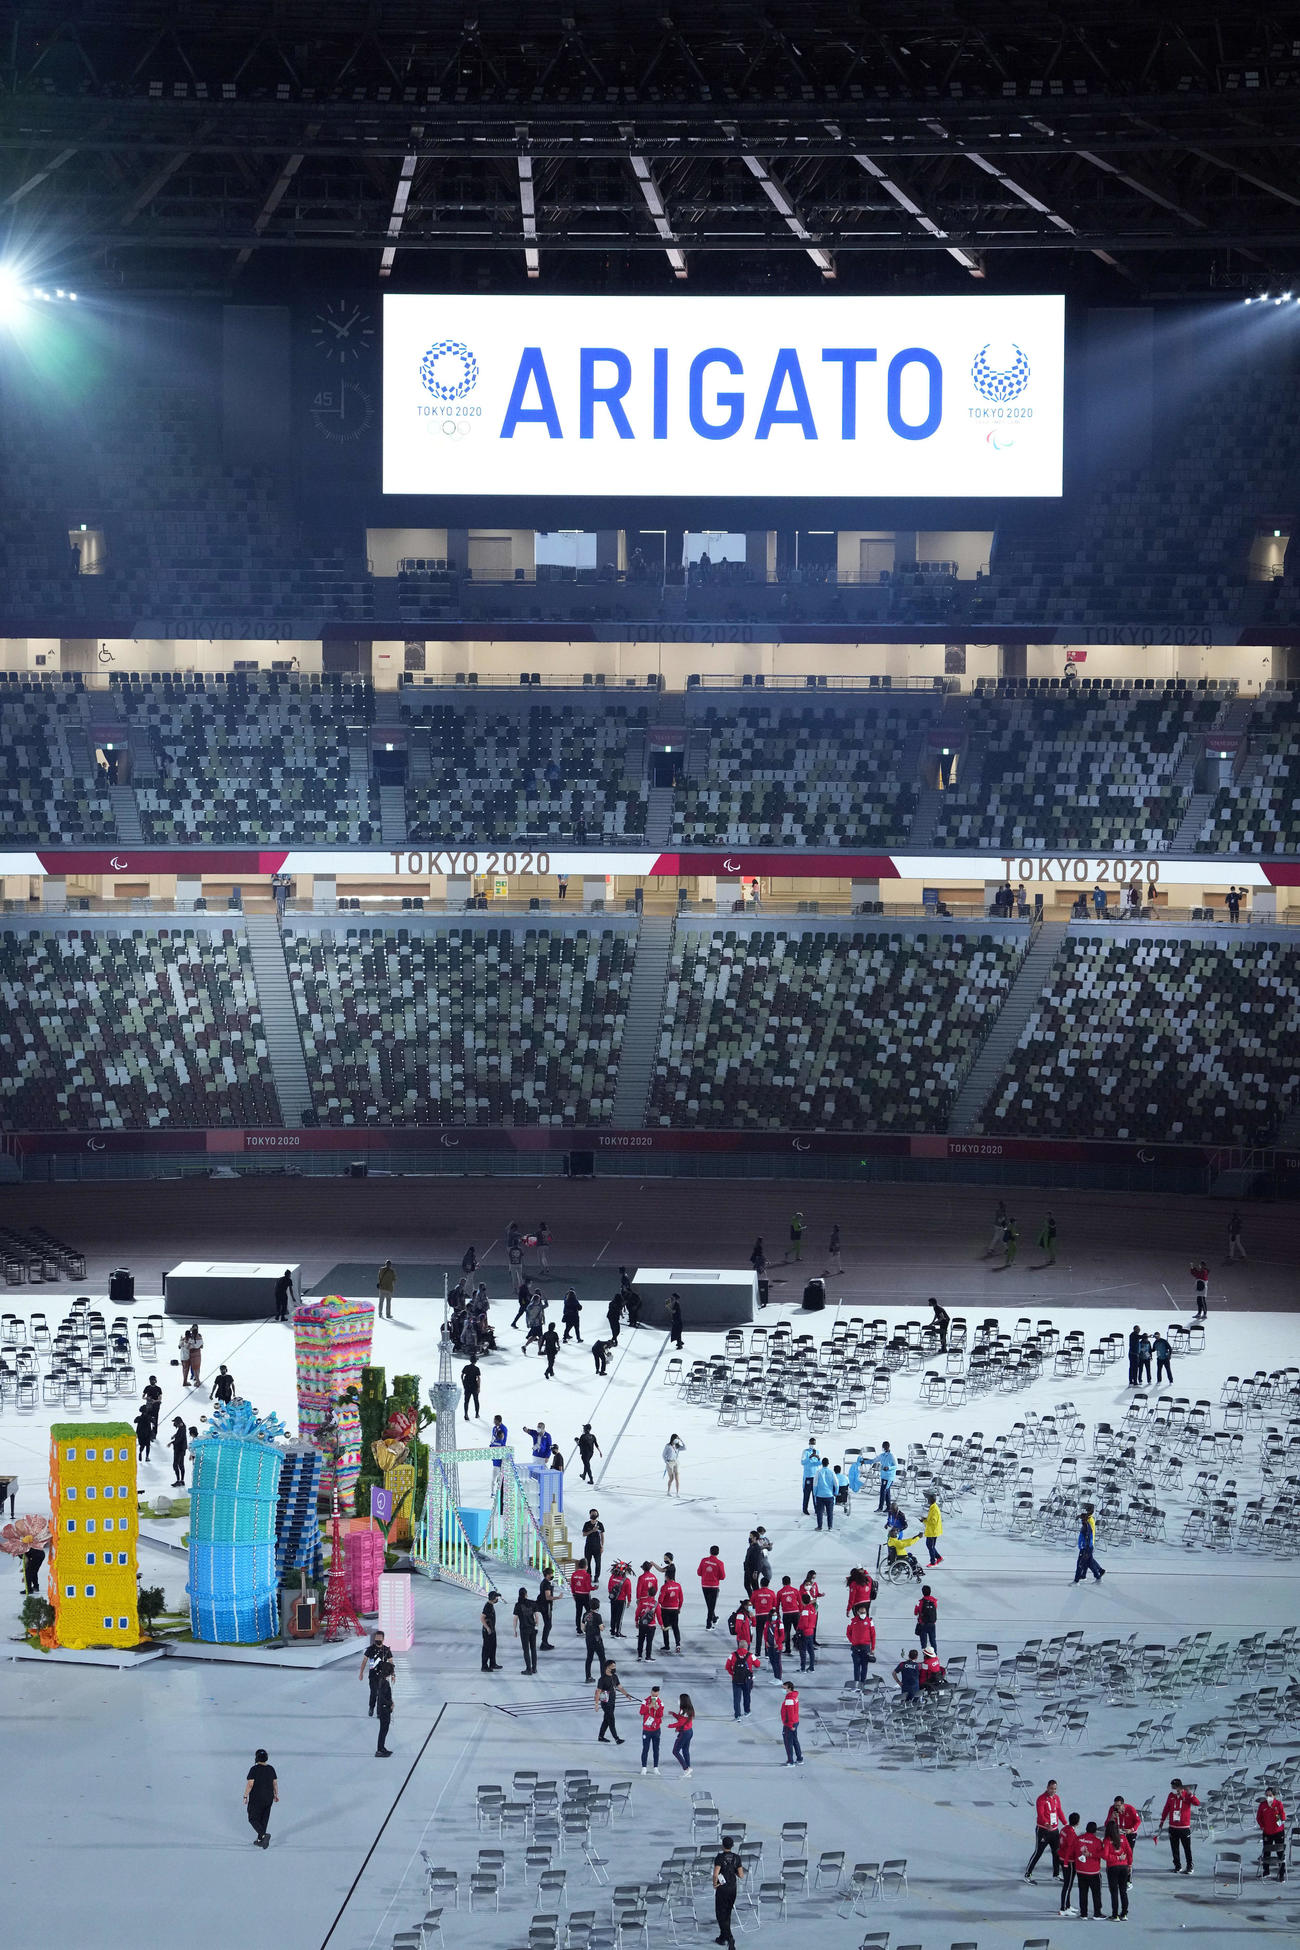 パラリンピックが閉会し「ARIGATO」と表示される（撮影・滝沢徹郎）